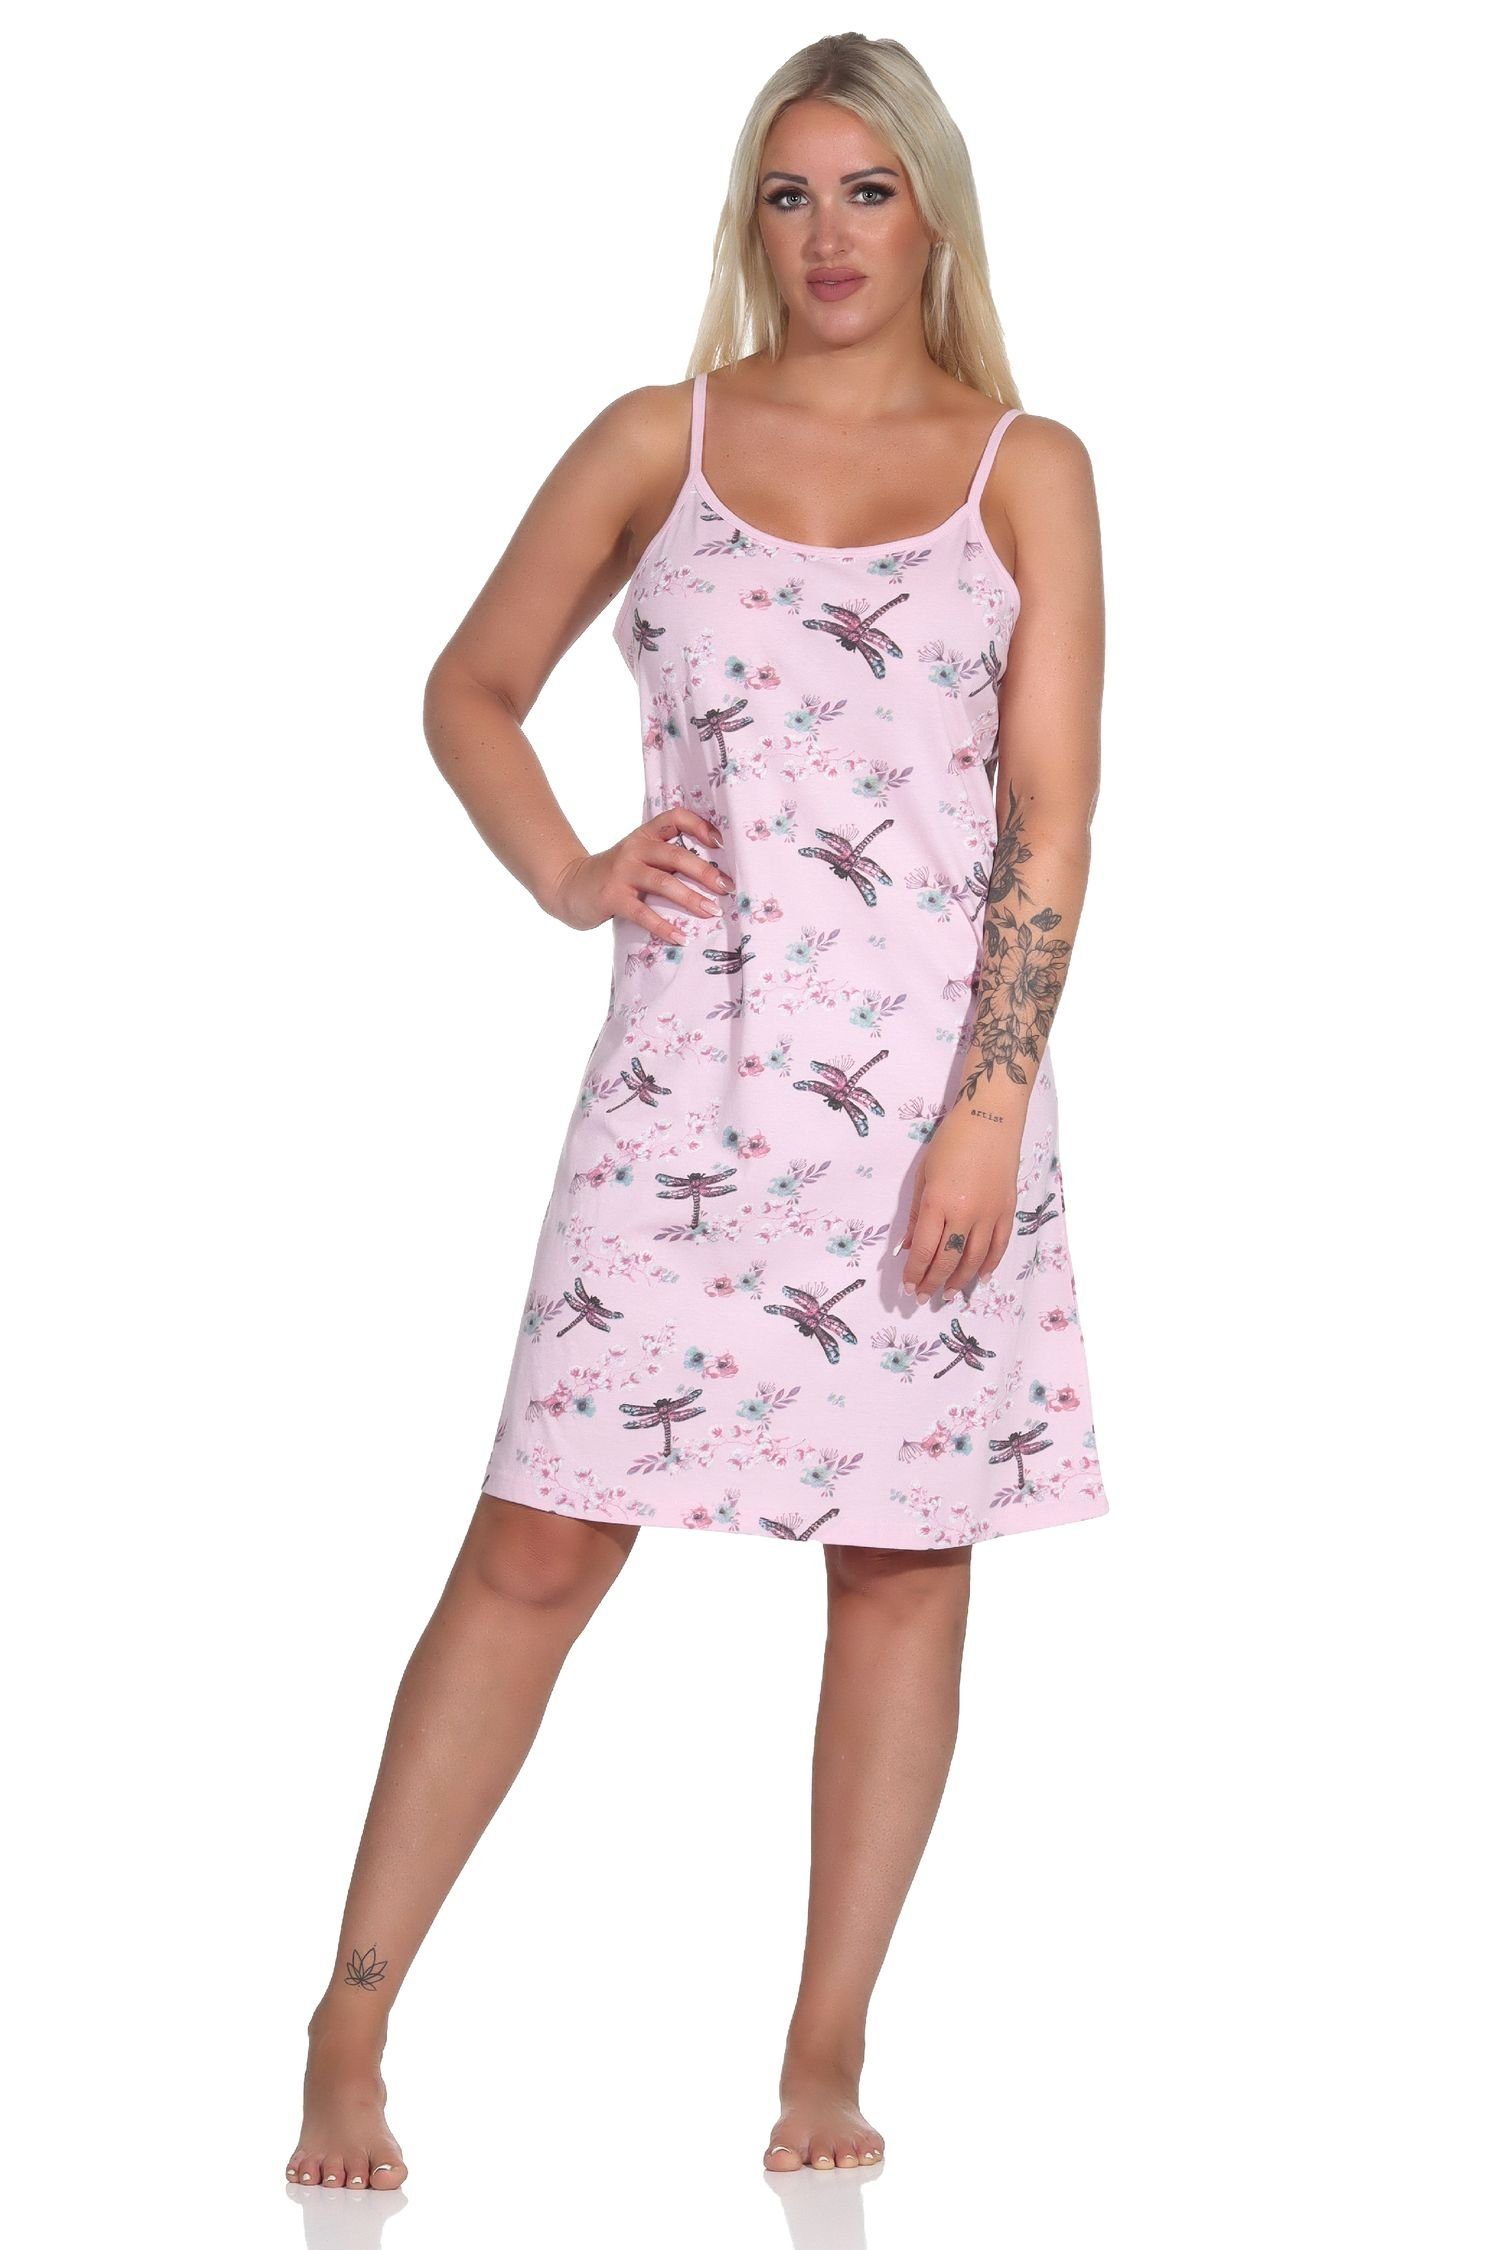 Normann Nachthemd Sommerliches Damen Spaghetti Nachthemd von Normann, florales Design rosa